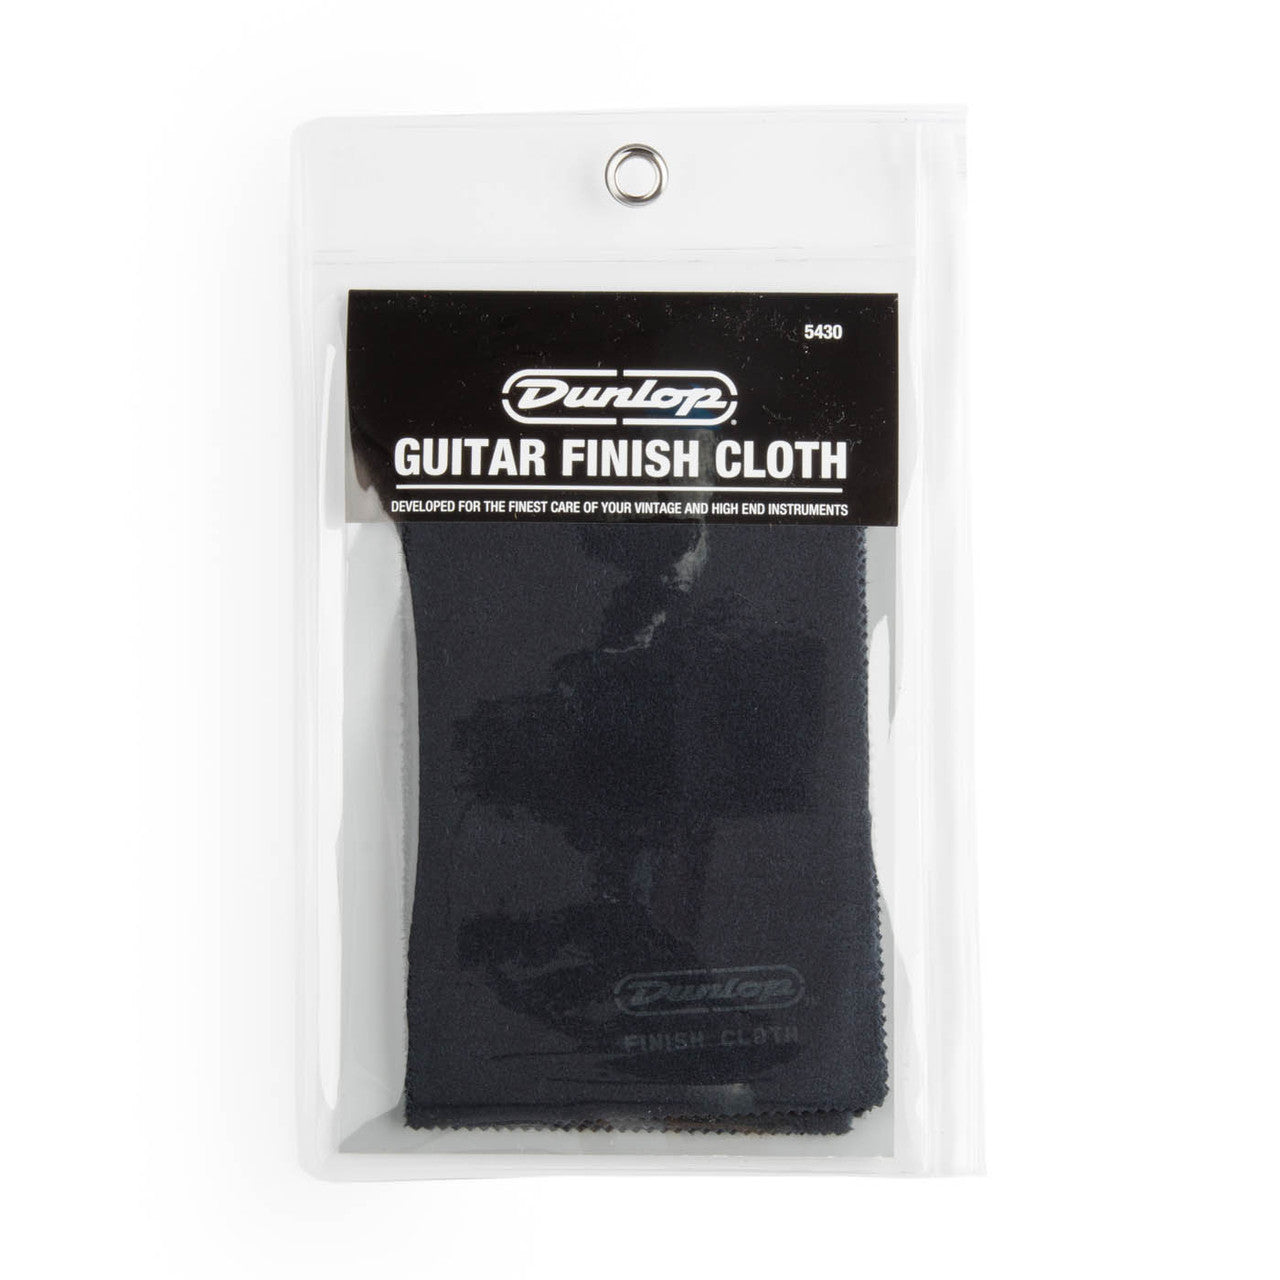 Dunlop Guitar Finish Cloth